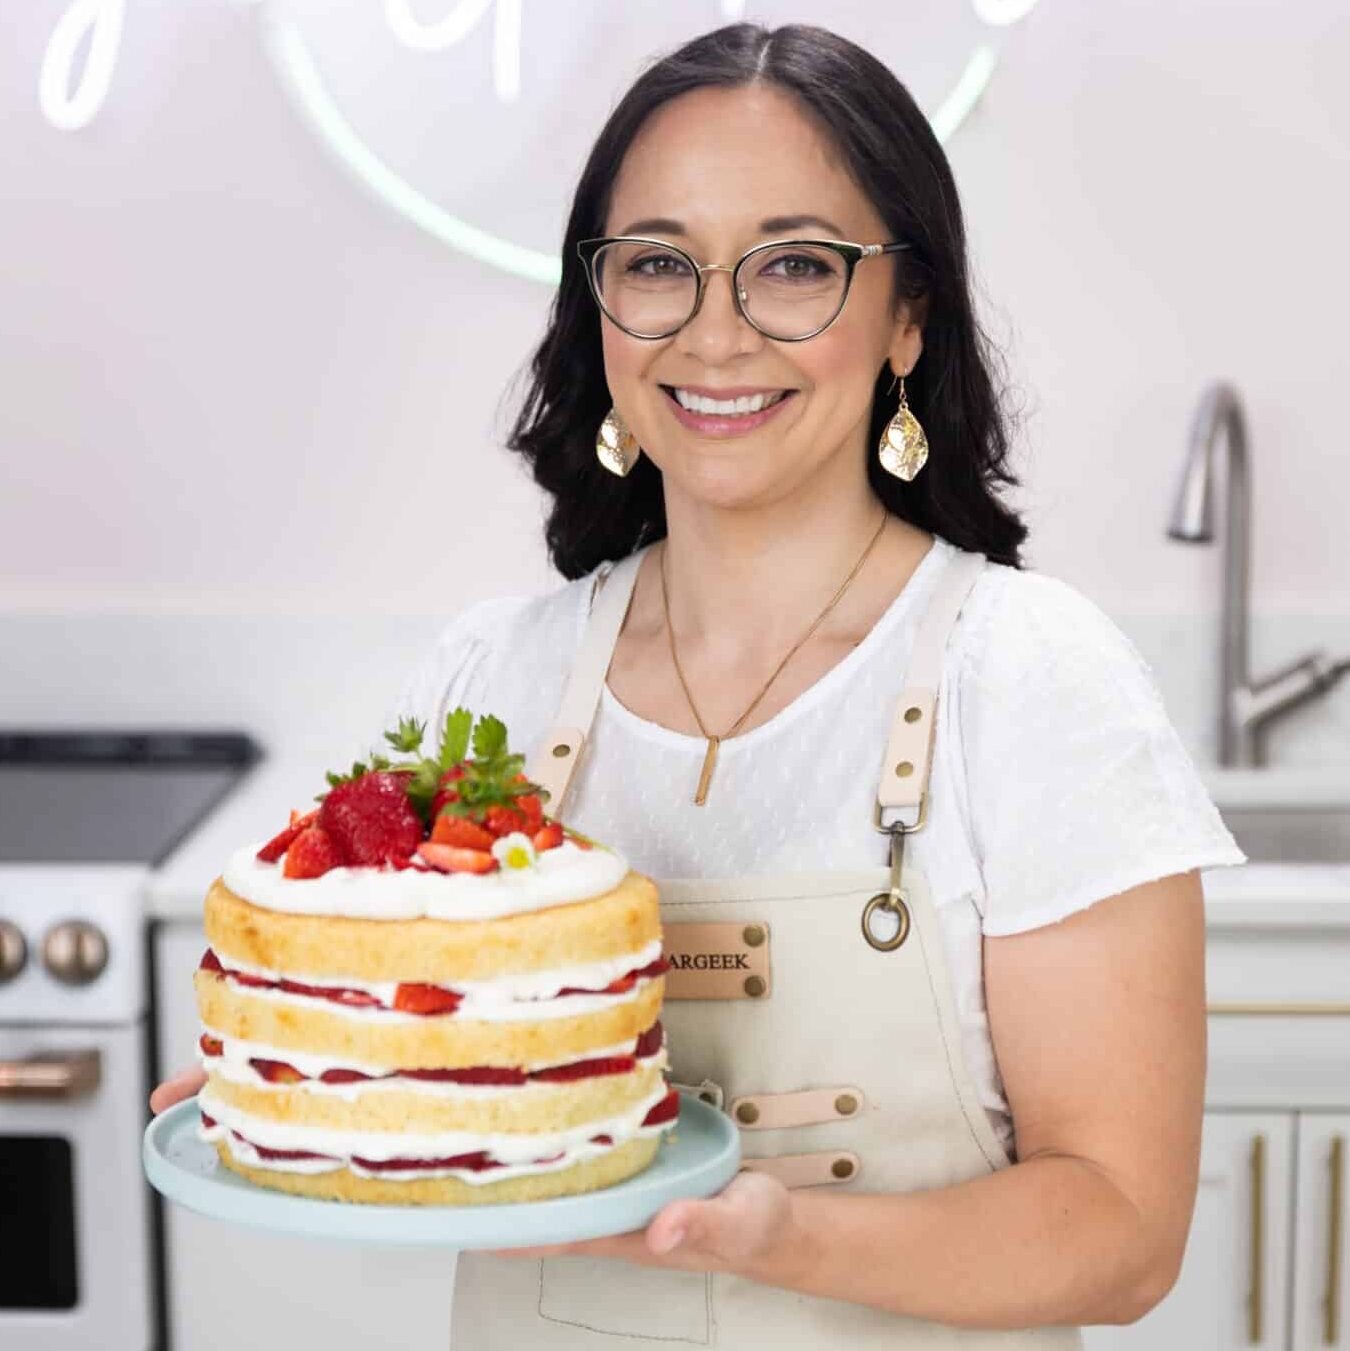 Liz Marek with strawberry cake